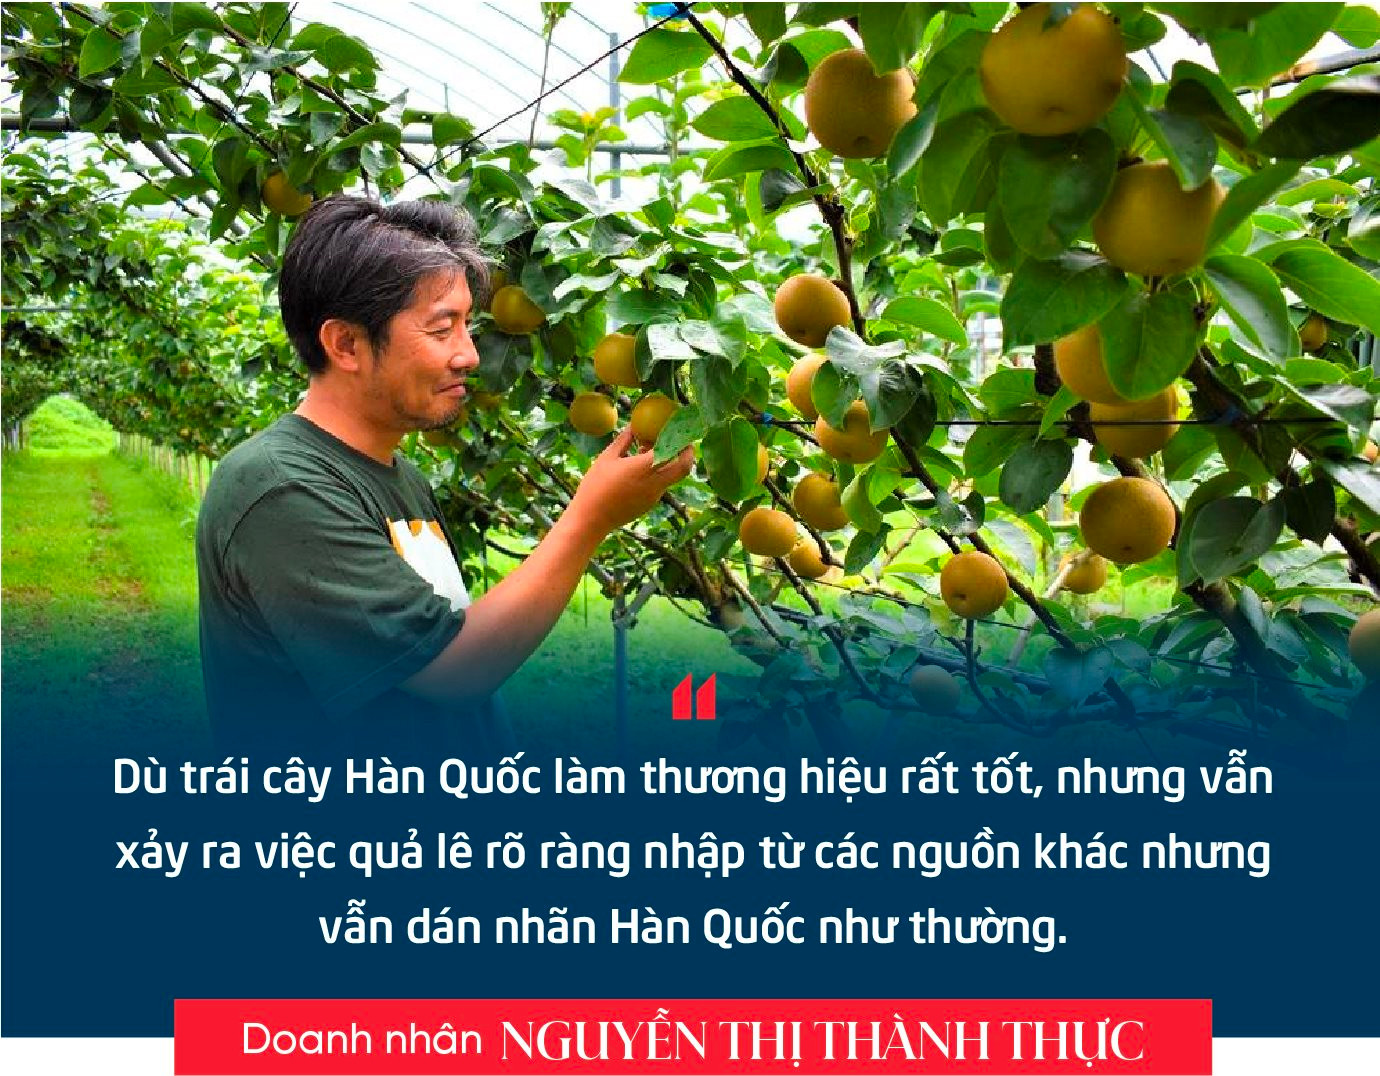 Doanh nhân Nguyễn Thị Thành Thực: Người Hàn Quốc sang Việt Nam làm chủ lĩnh vực công nghiệp, thì người Việt Nam cũng có thể làm chủ trong nông nghiệp ở Hàn Quốc- Ảnh 6.